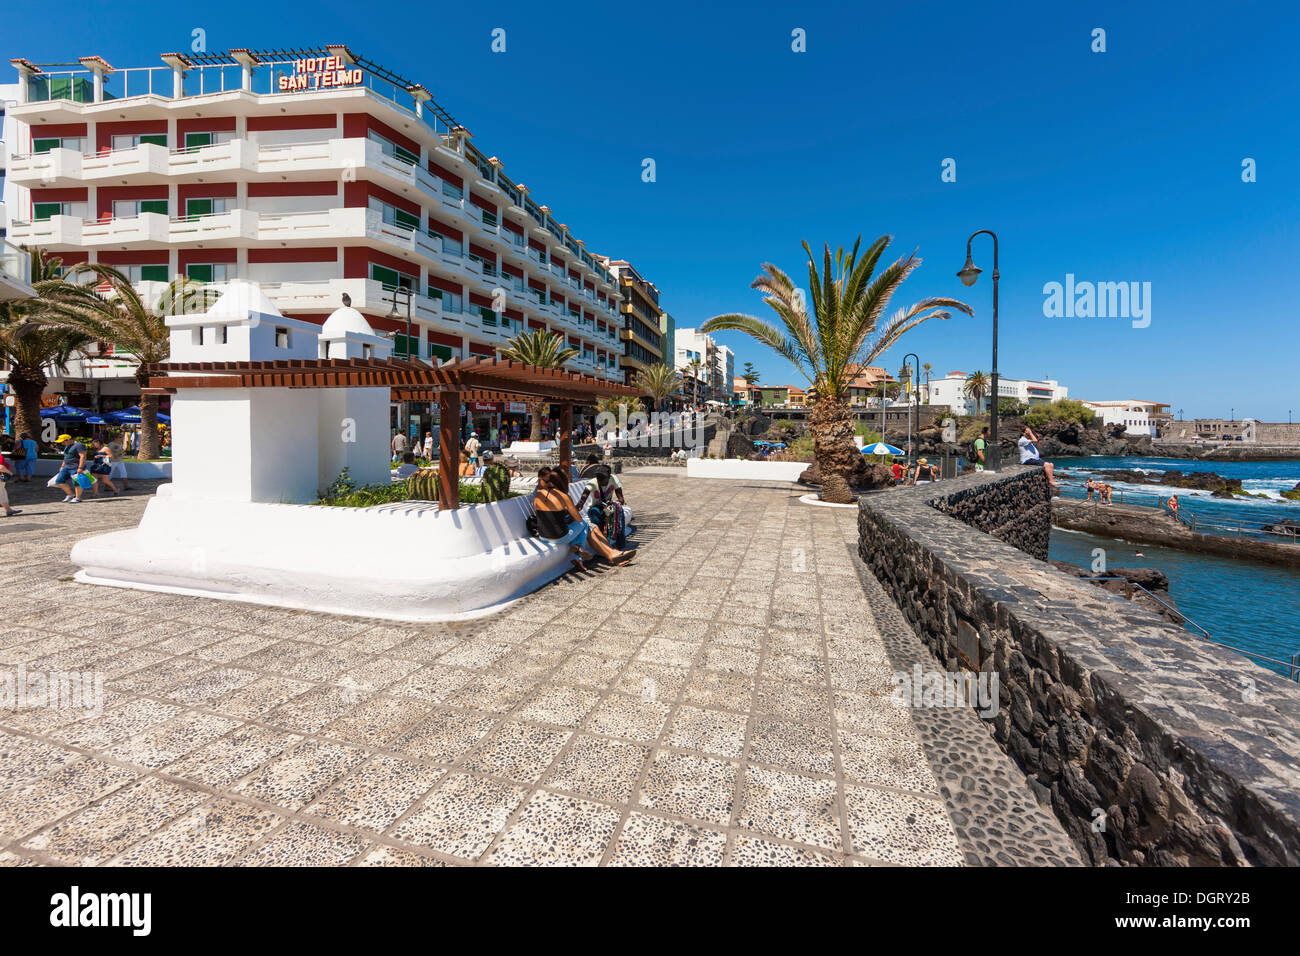 Promenade au bord de l'eau avec l'Hôtel San Telmo, Puerto de la Cruz, San Telmo, Puerto De La Cruz, Tenerife, Canaries, Espagne Banque D'Images